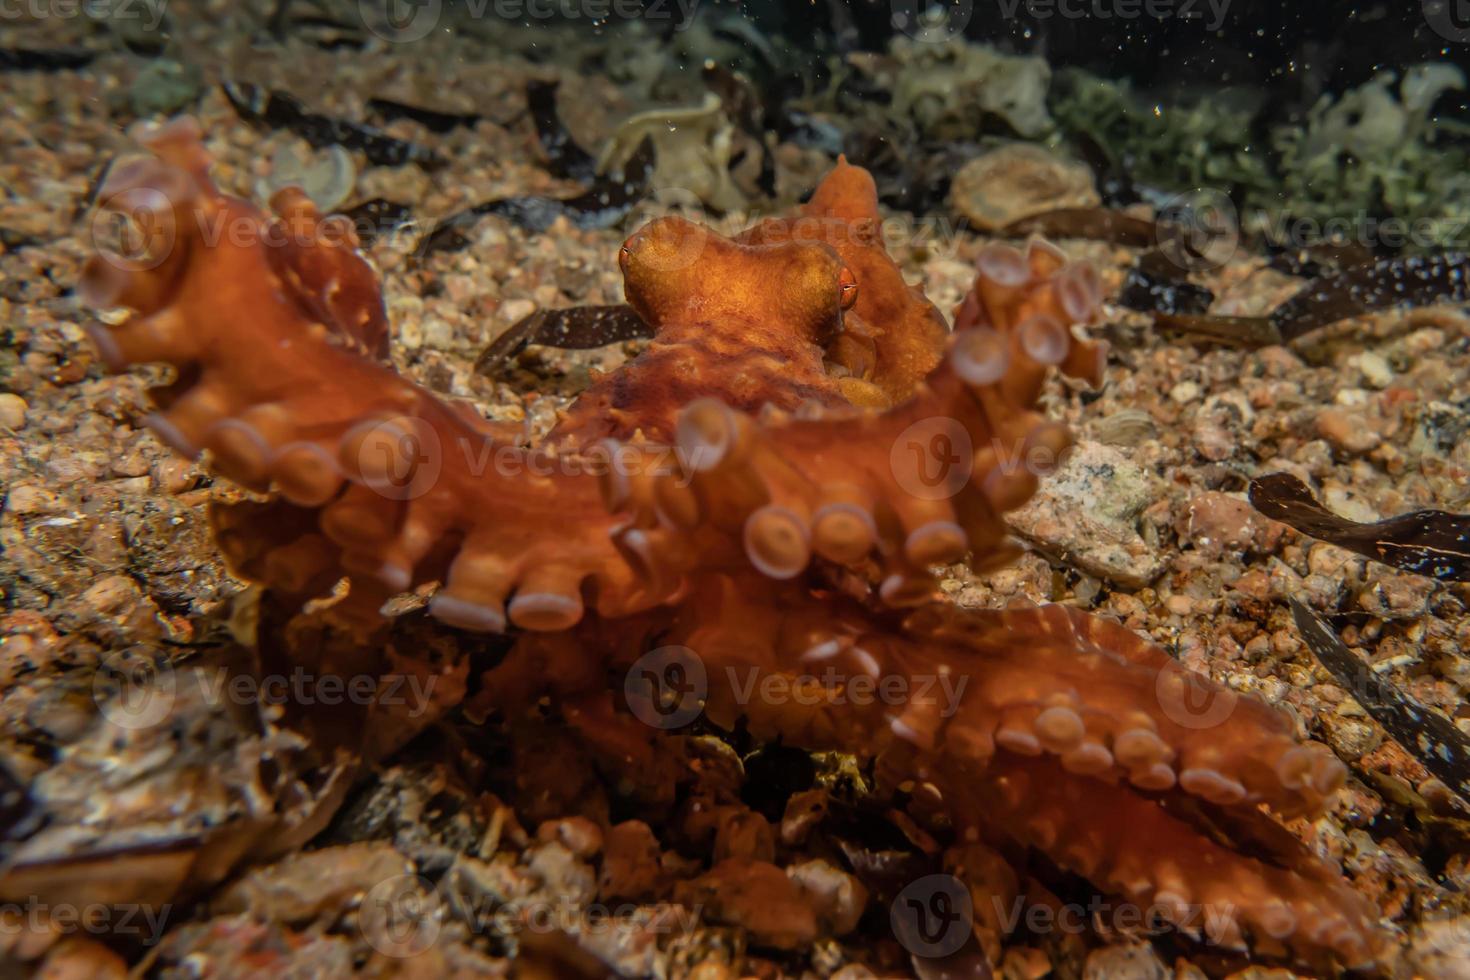 bläckfisk kung av kamouflage i Röda havet, eilat israel foto